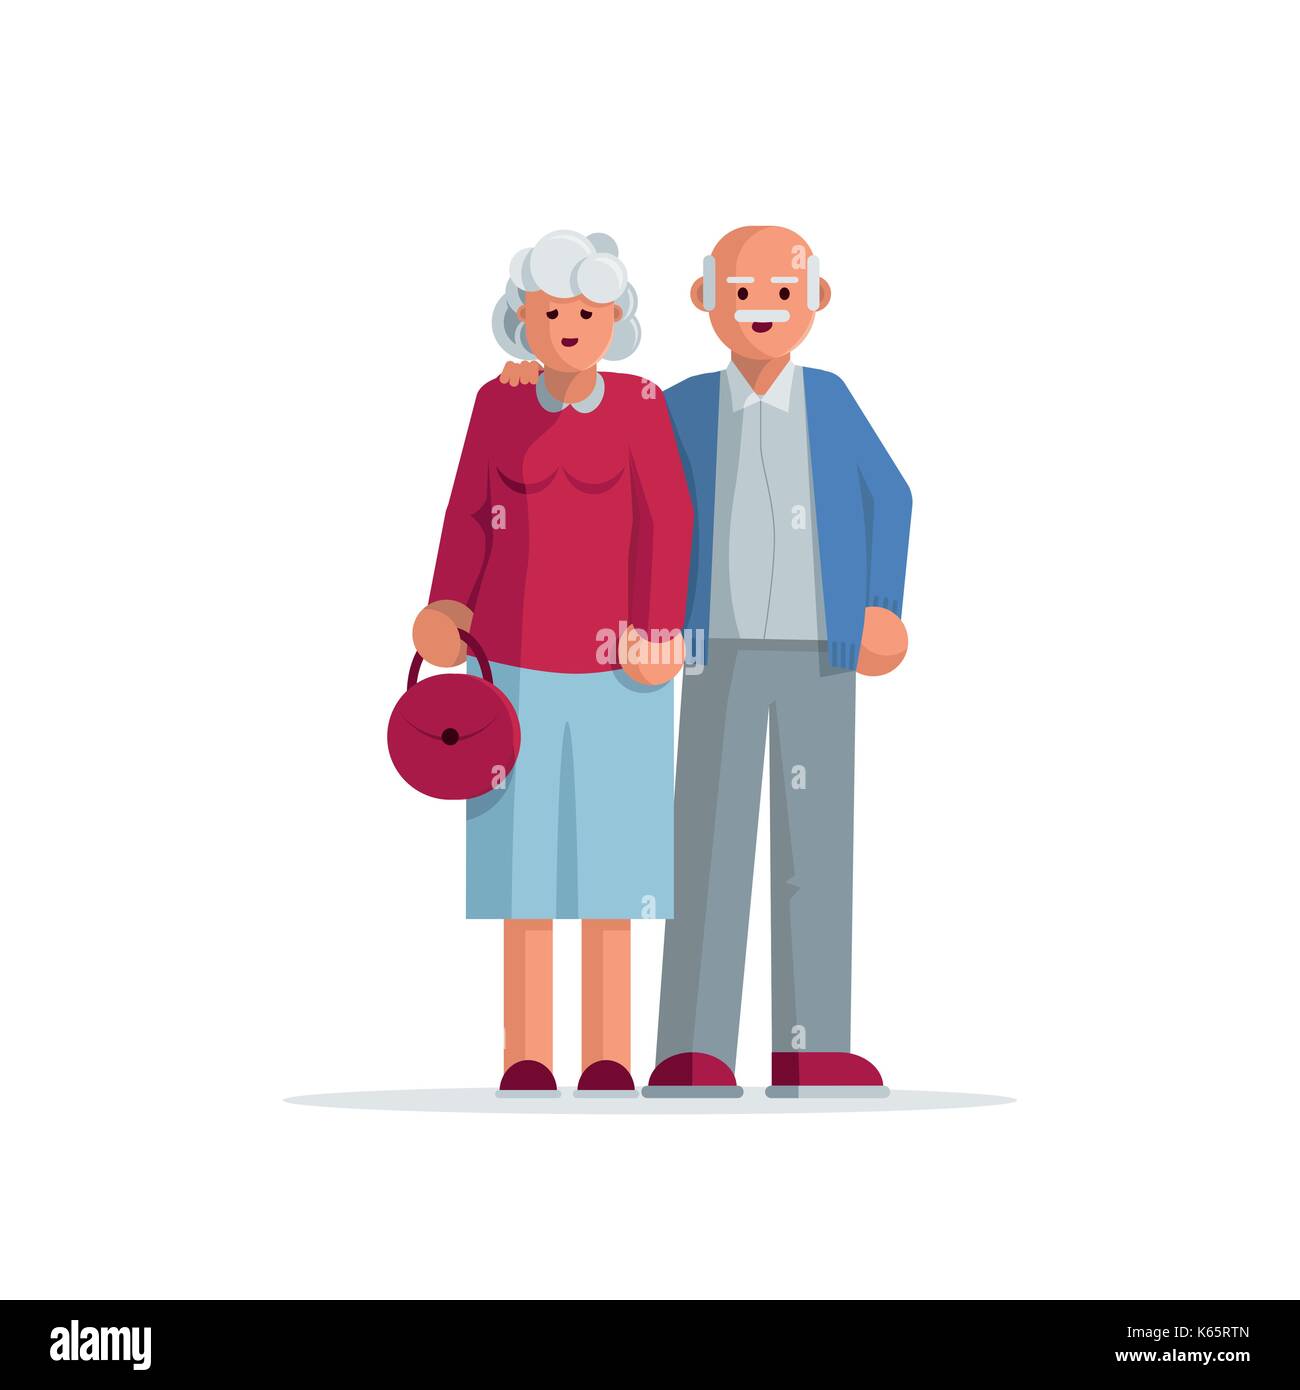 Нарисованная пожилая пара